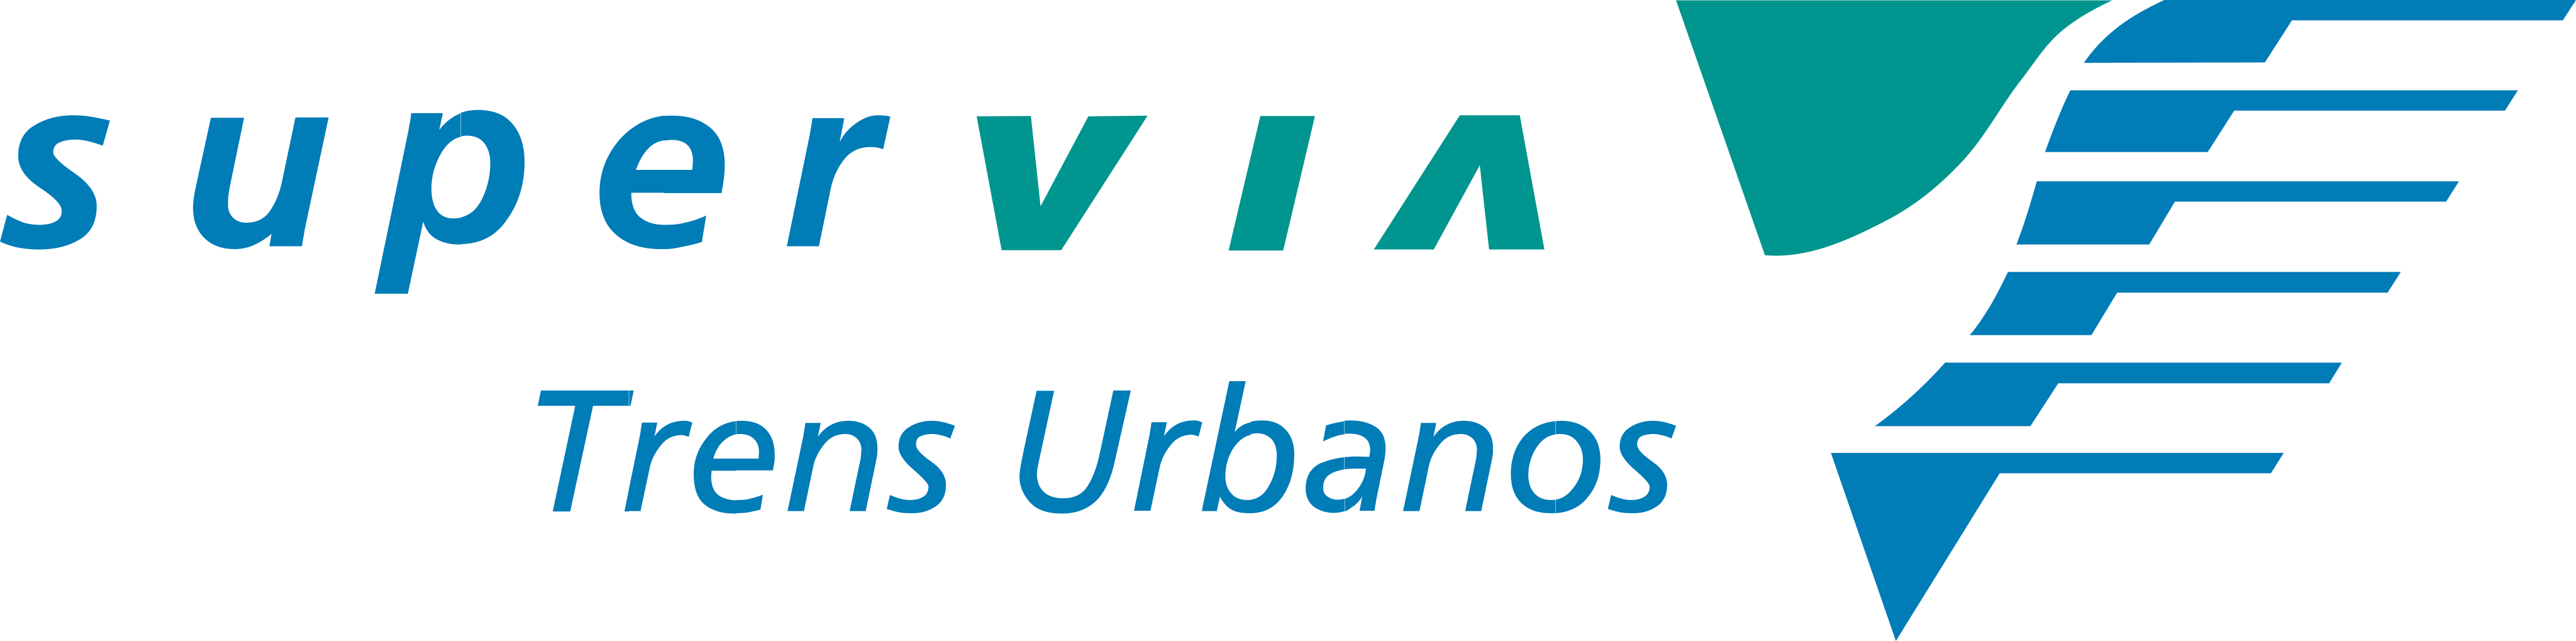 SuperVia Logo.